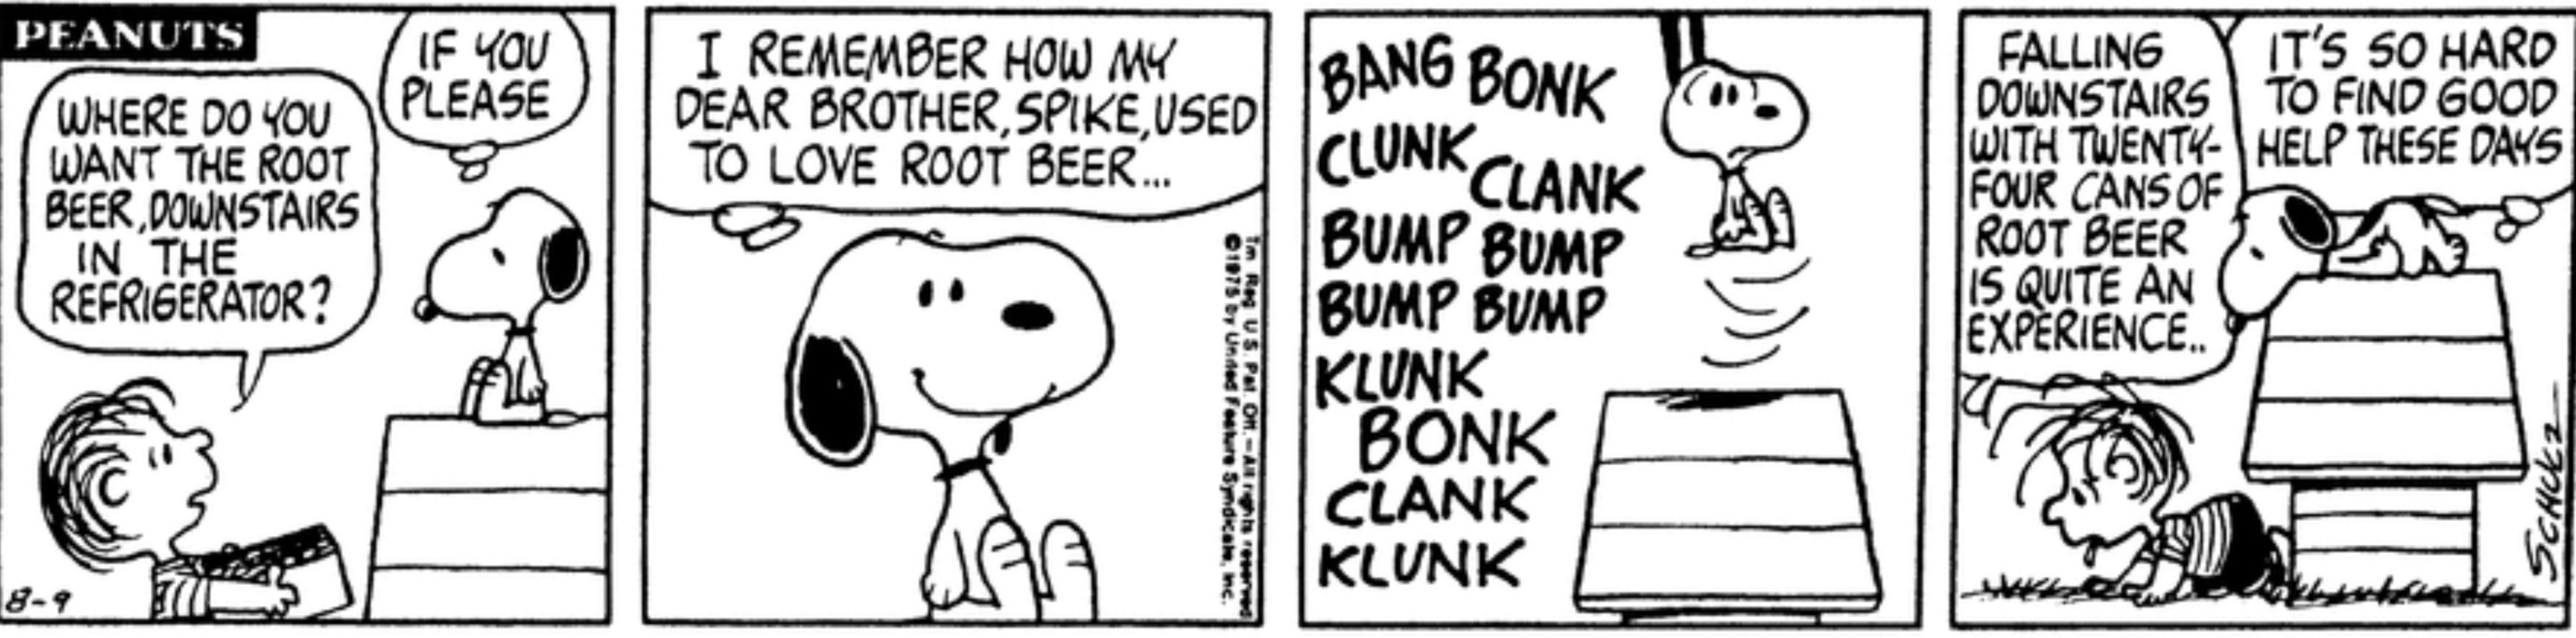 Cerveja de raiz Snoopy e Linus em Peanuts.